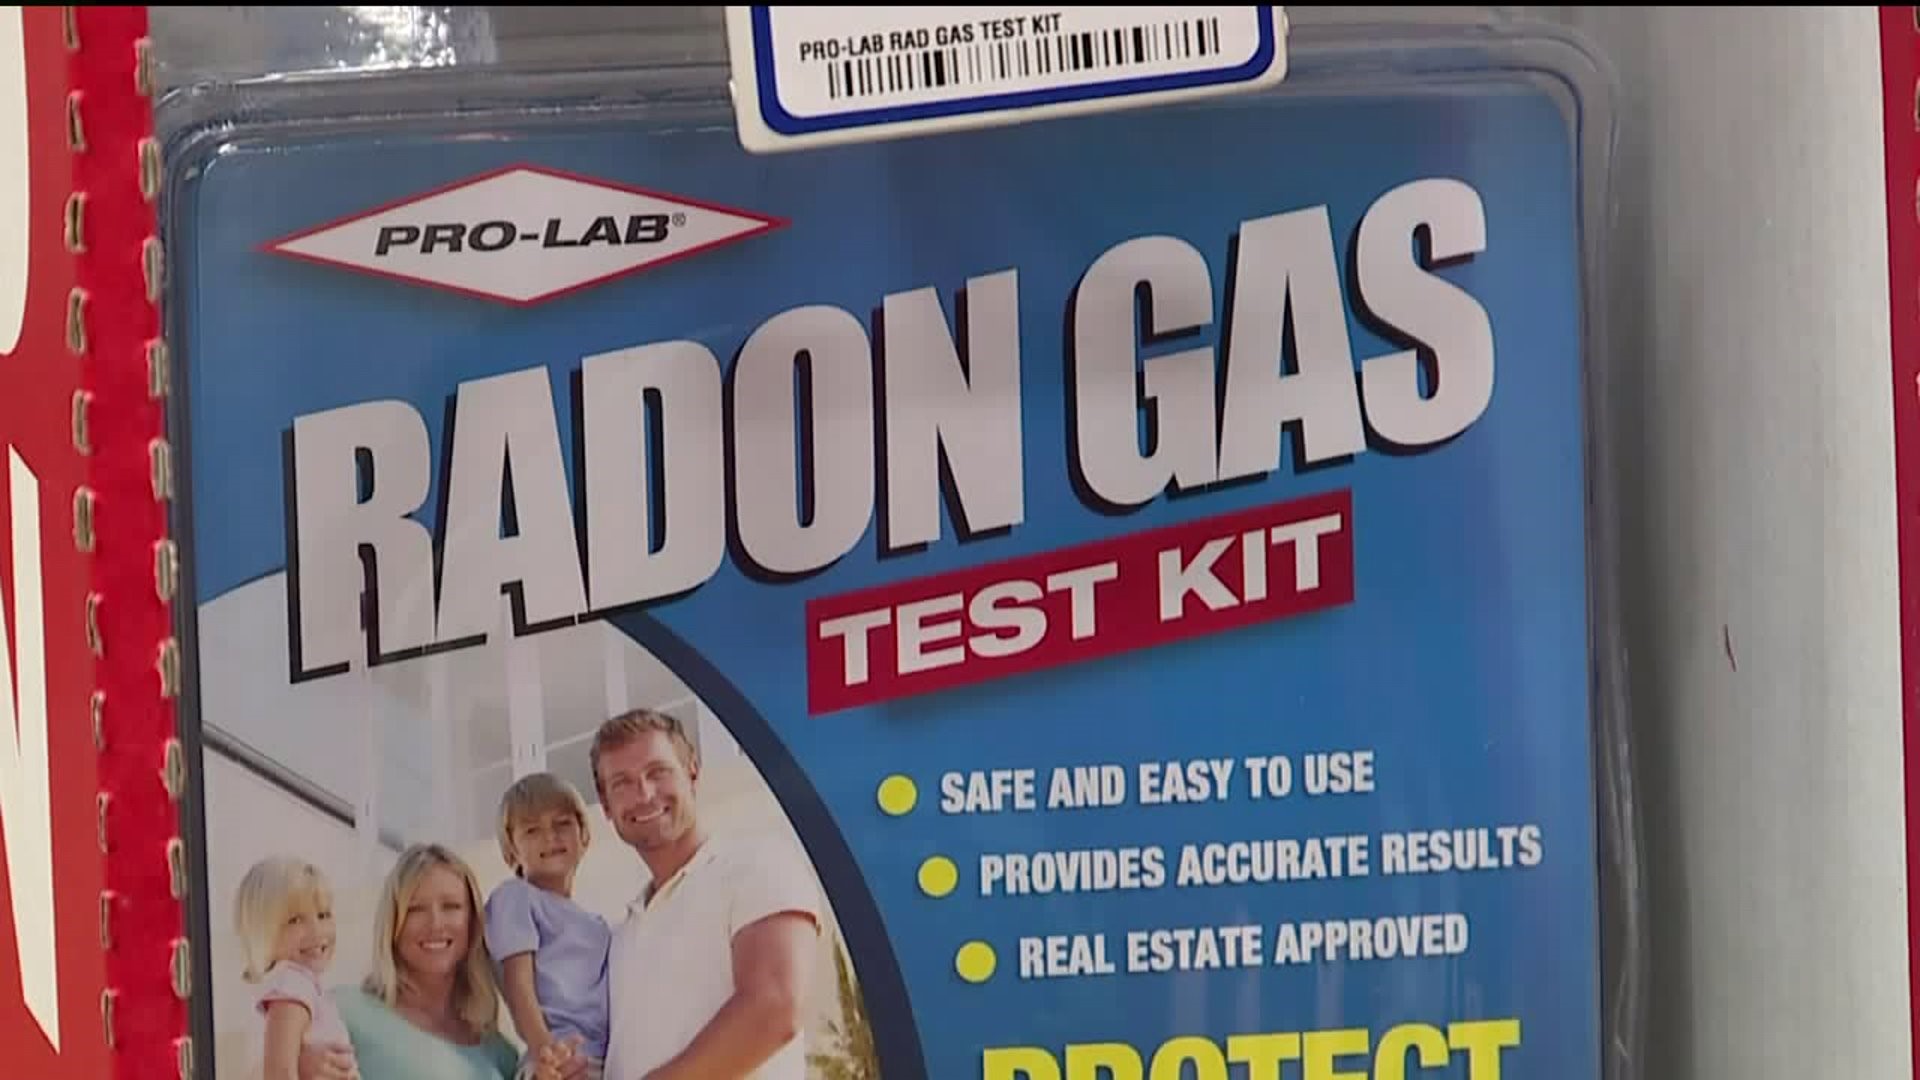 DEP Recommends Radon Tests